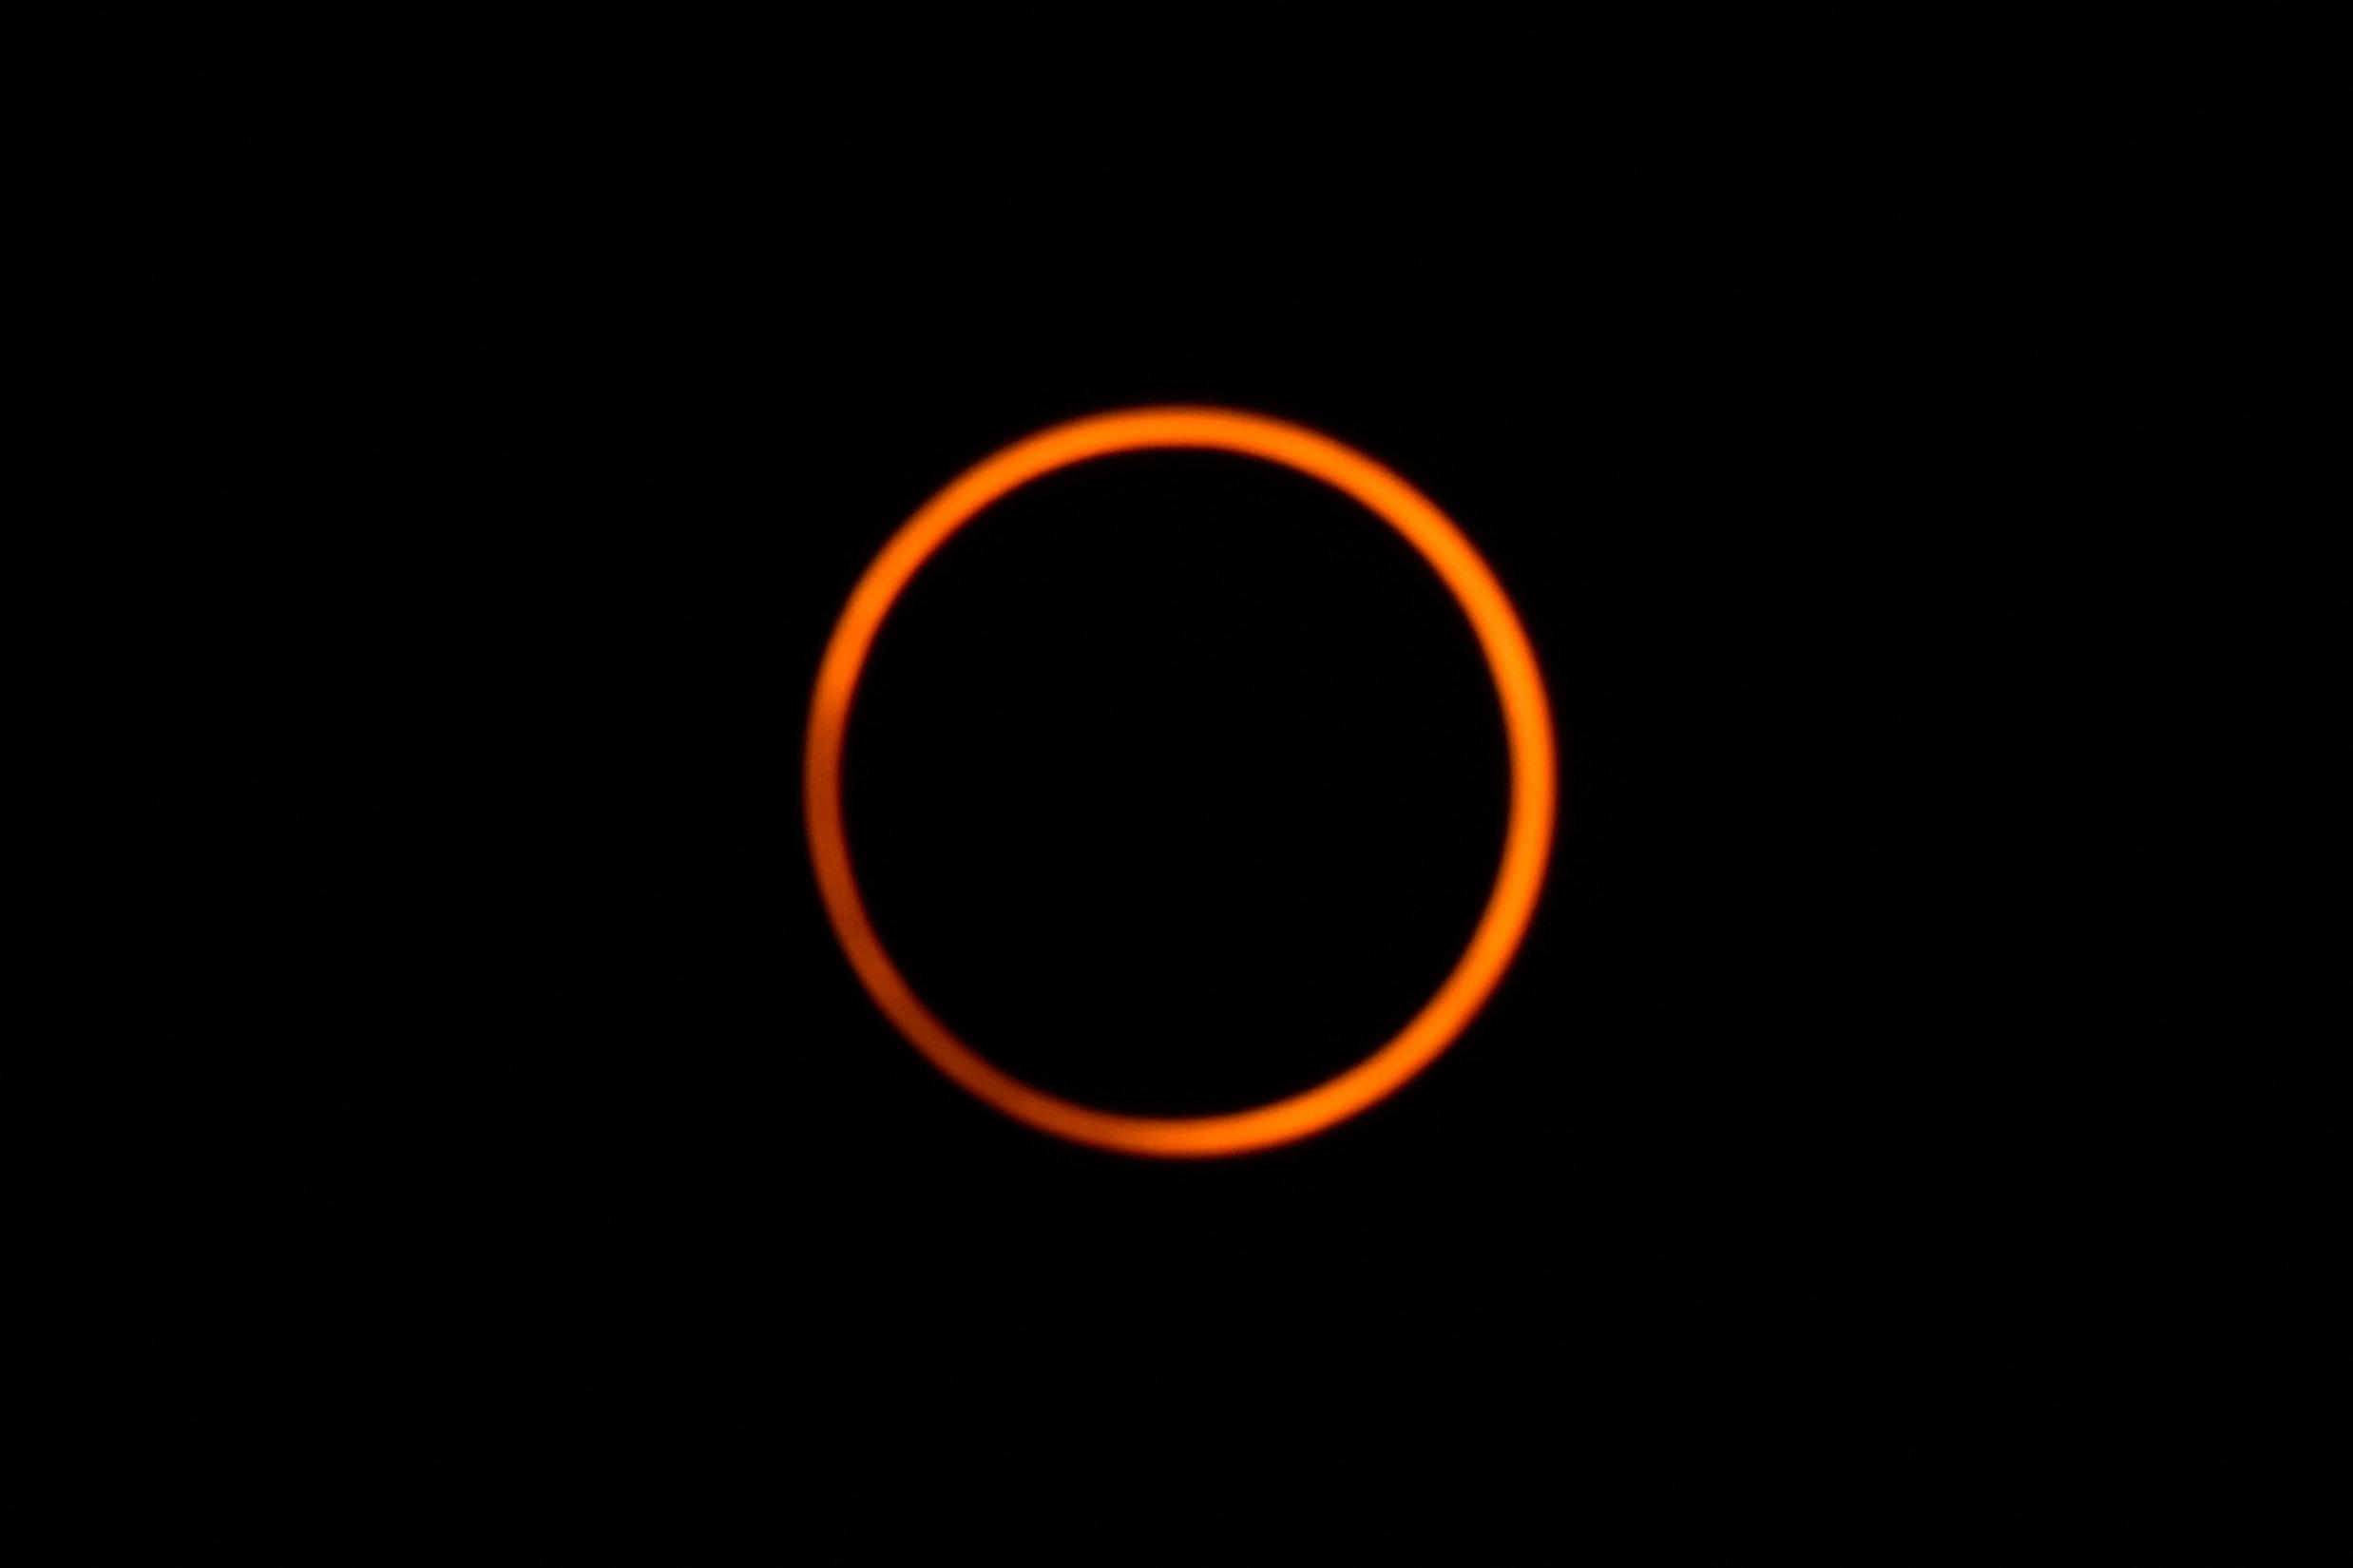 Une magnifique éclipse annulaire avec son cercle de feu a pu être observée au dessus des Amériques. REUTERS/Vannessa Jimenez